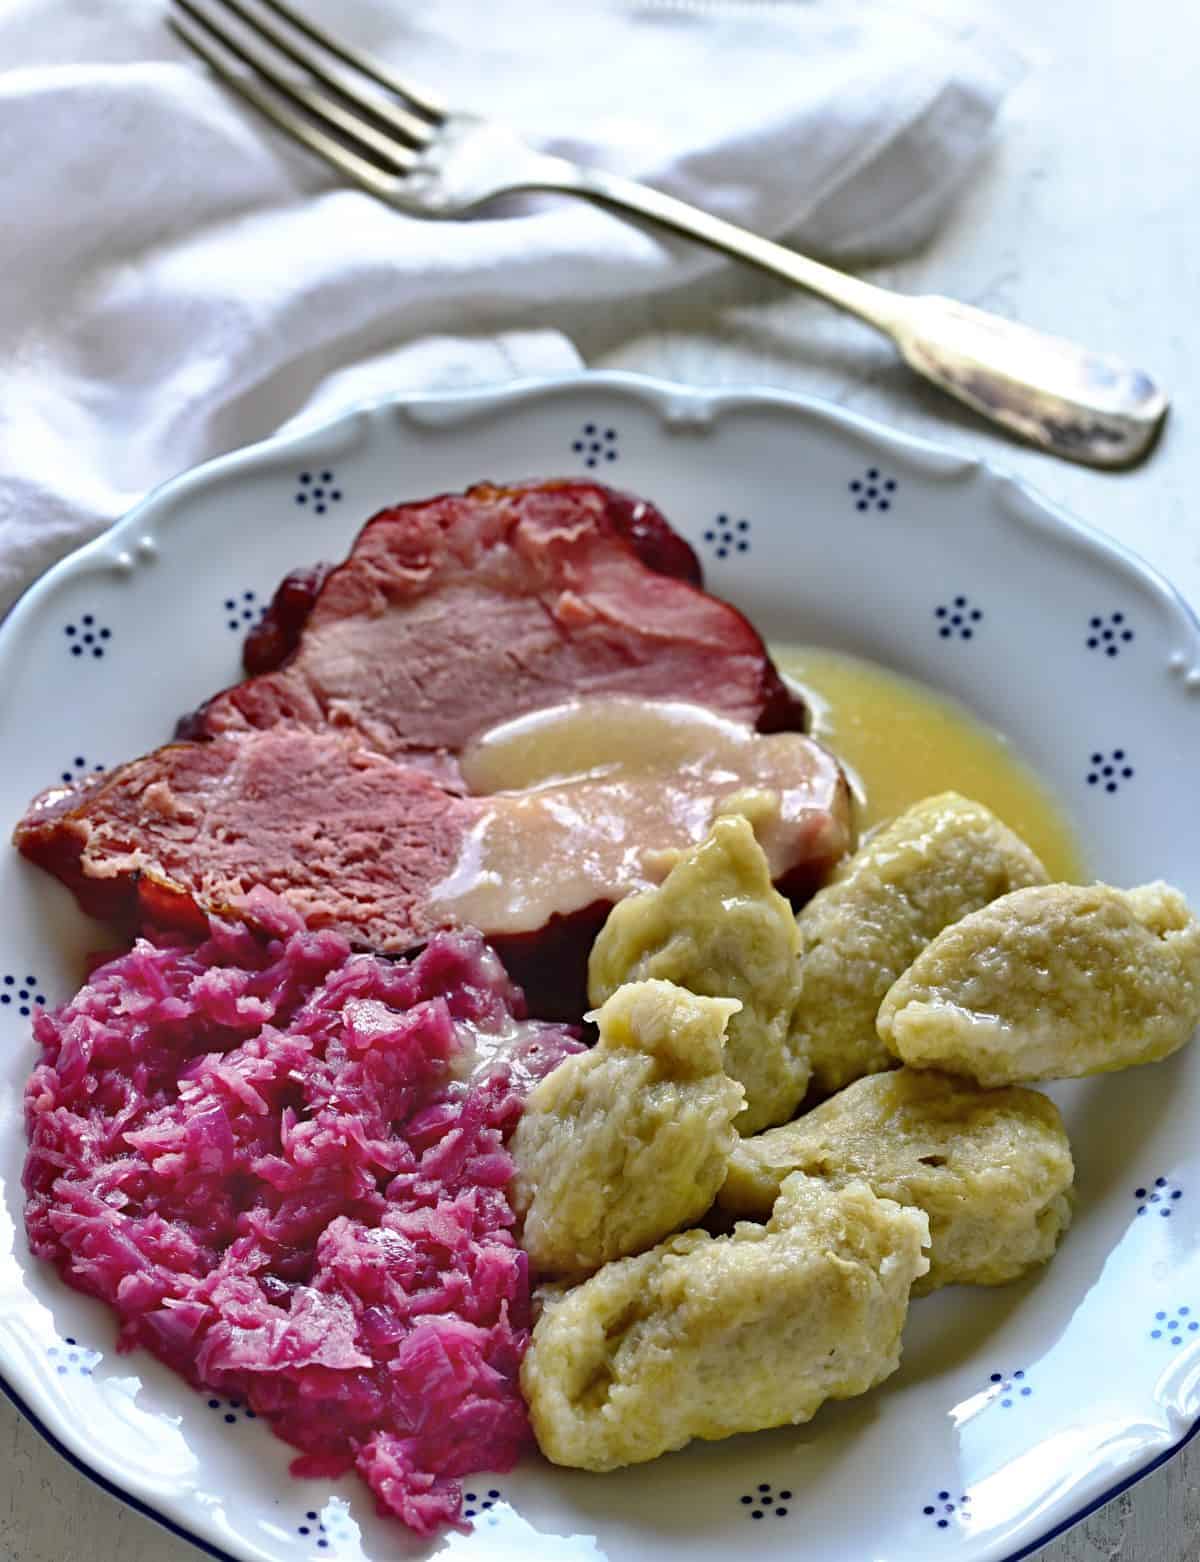 czech chlupaté knedlíky potato dumplings served with red cabbage and smoked meat